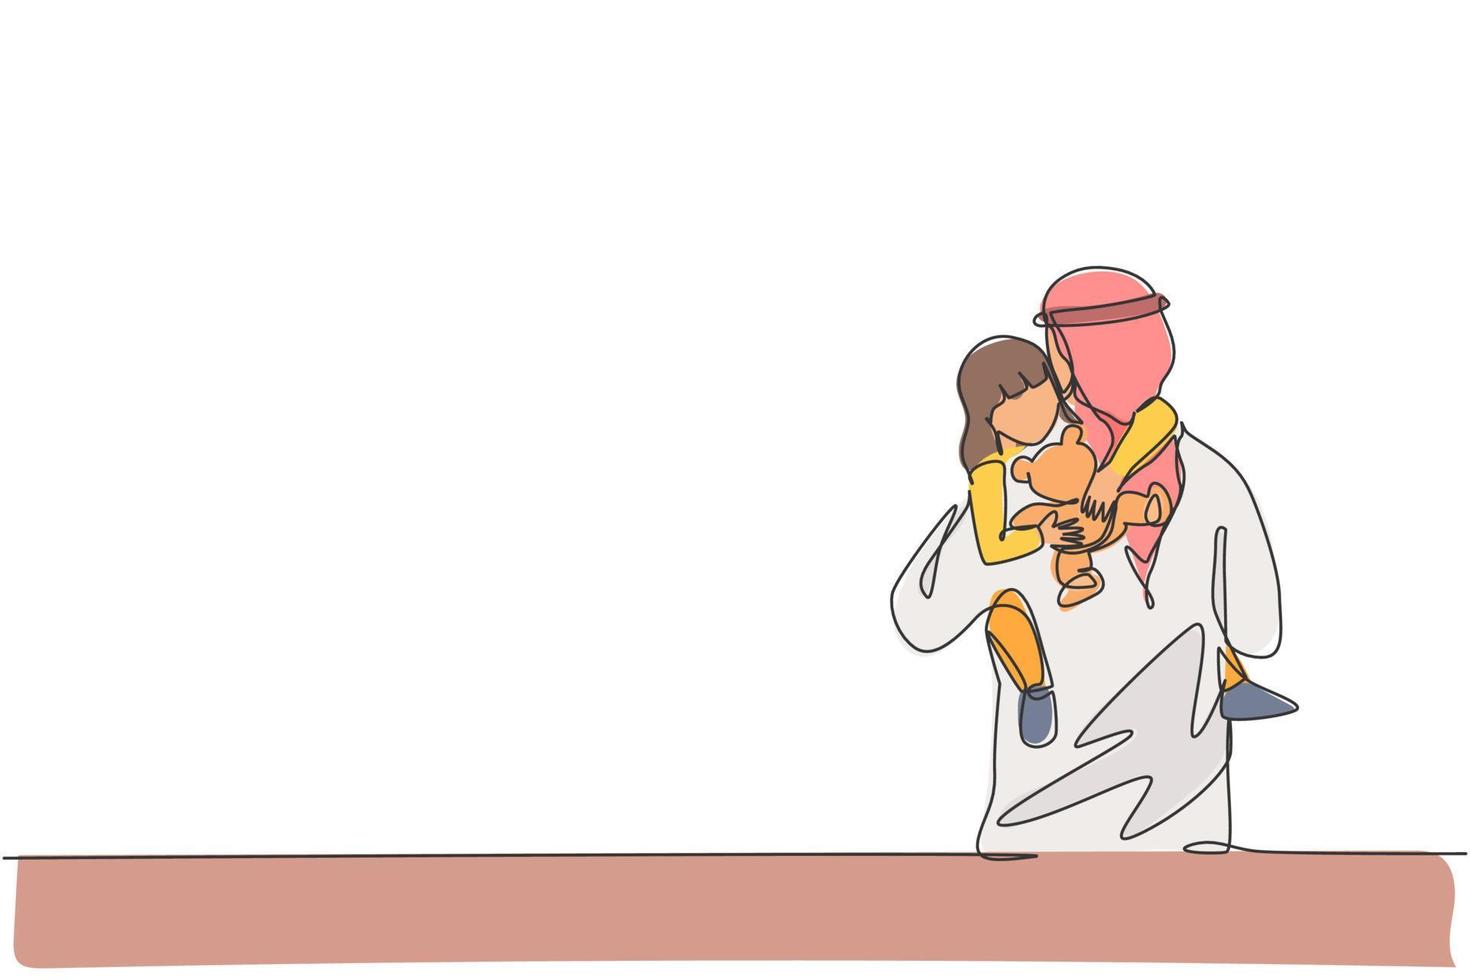 disegno a linea continua di un giovane papà islamico che abbraccia la figlia assonnata mentre tiene in mano una bambola giocattolo. concetto di genitorialità famiglia felice musulmana araba. illustrazione vettoriale di disegno di una linea di disegno